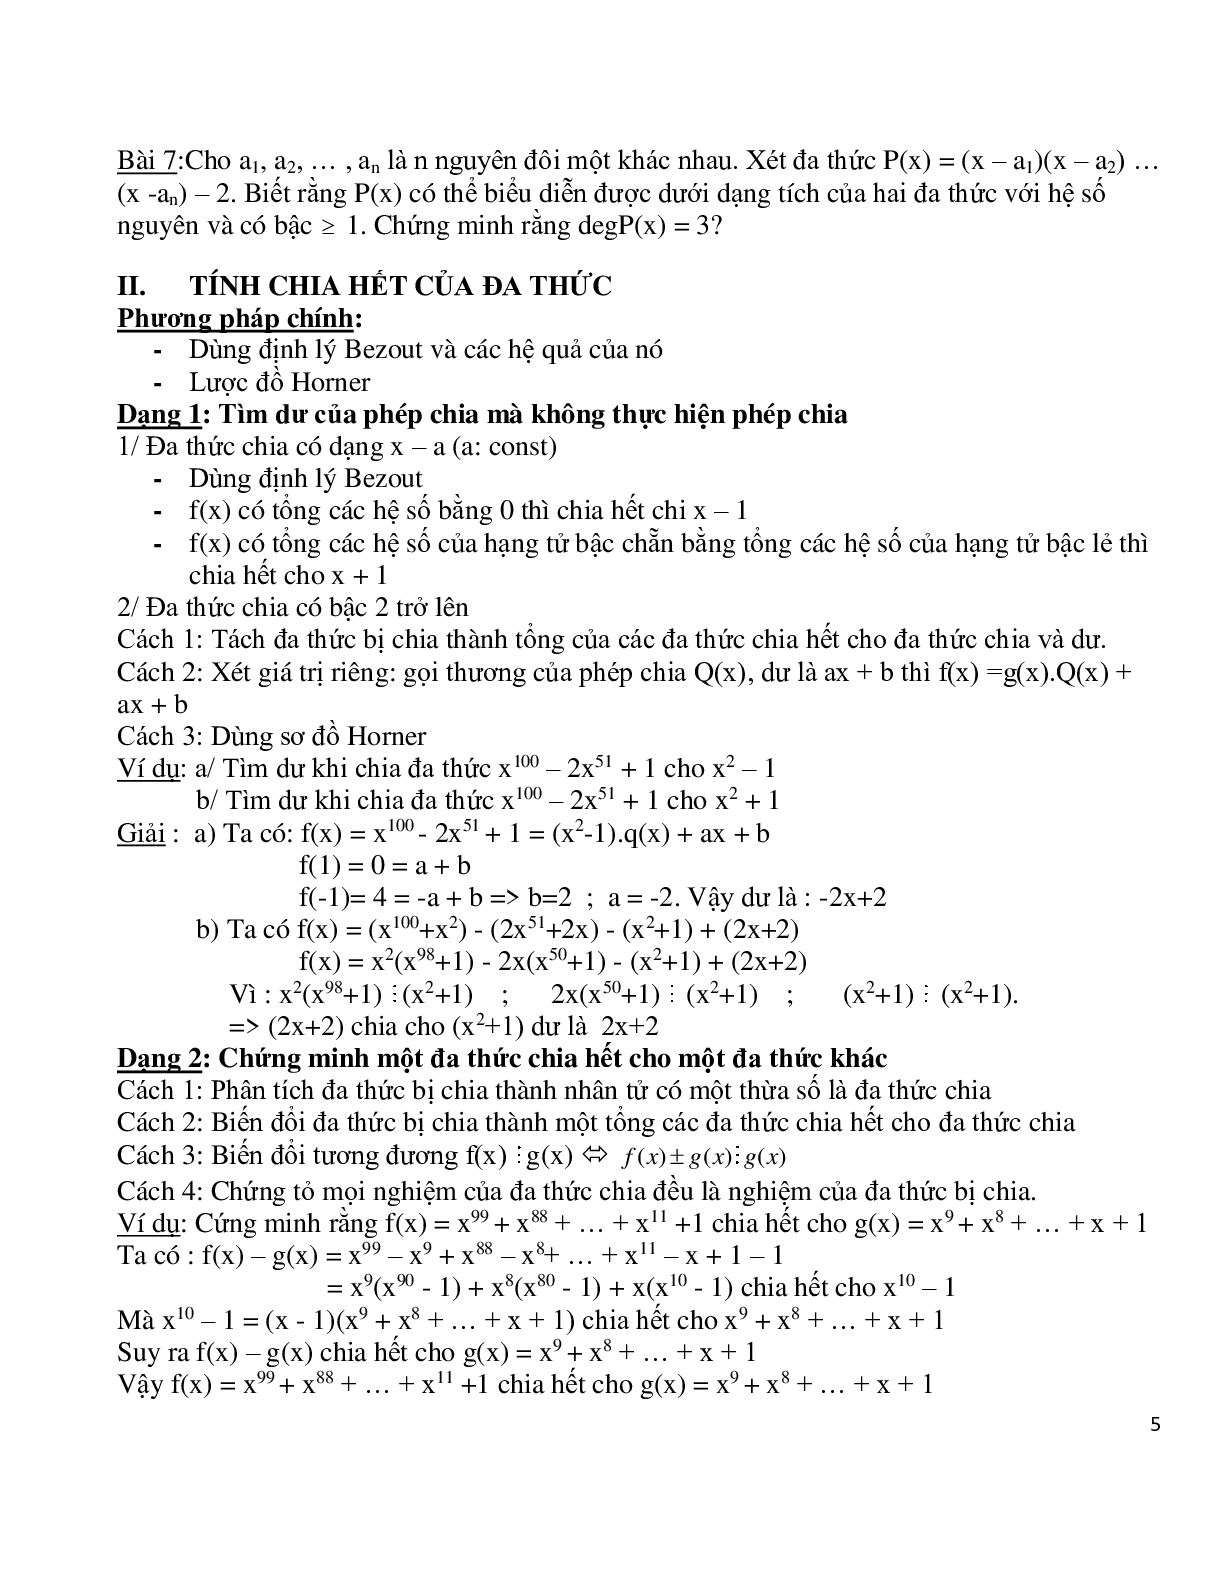 Chuyên đề bồi dưỡng học sinh giỏi toán đa thức (trang 5)